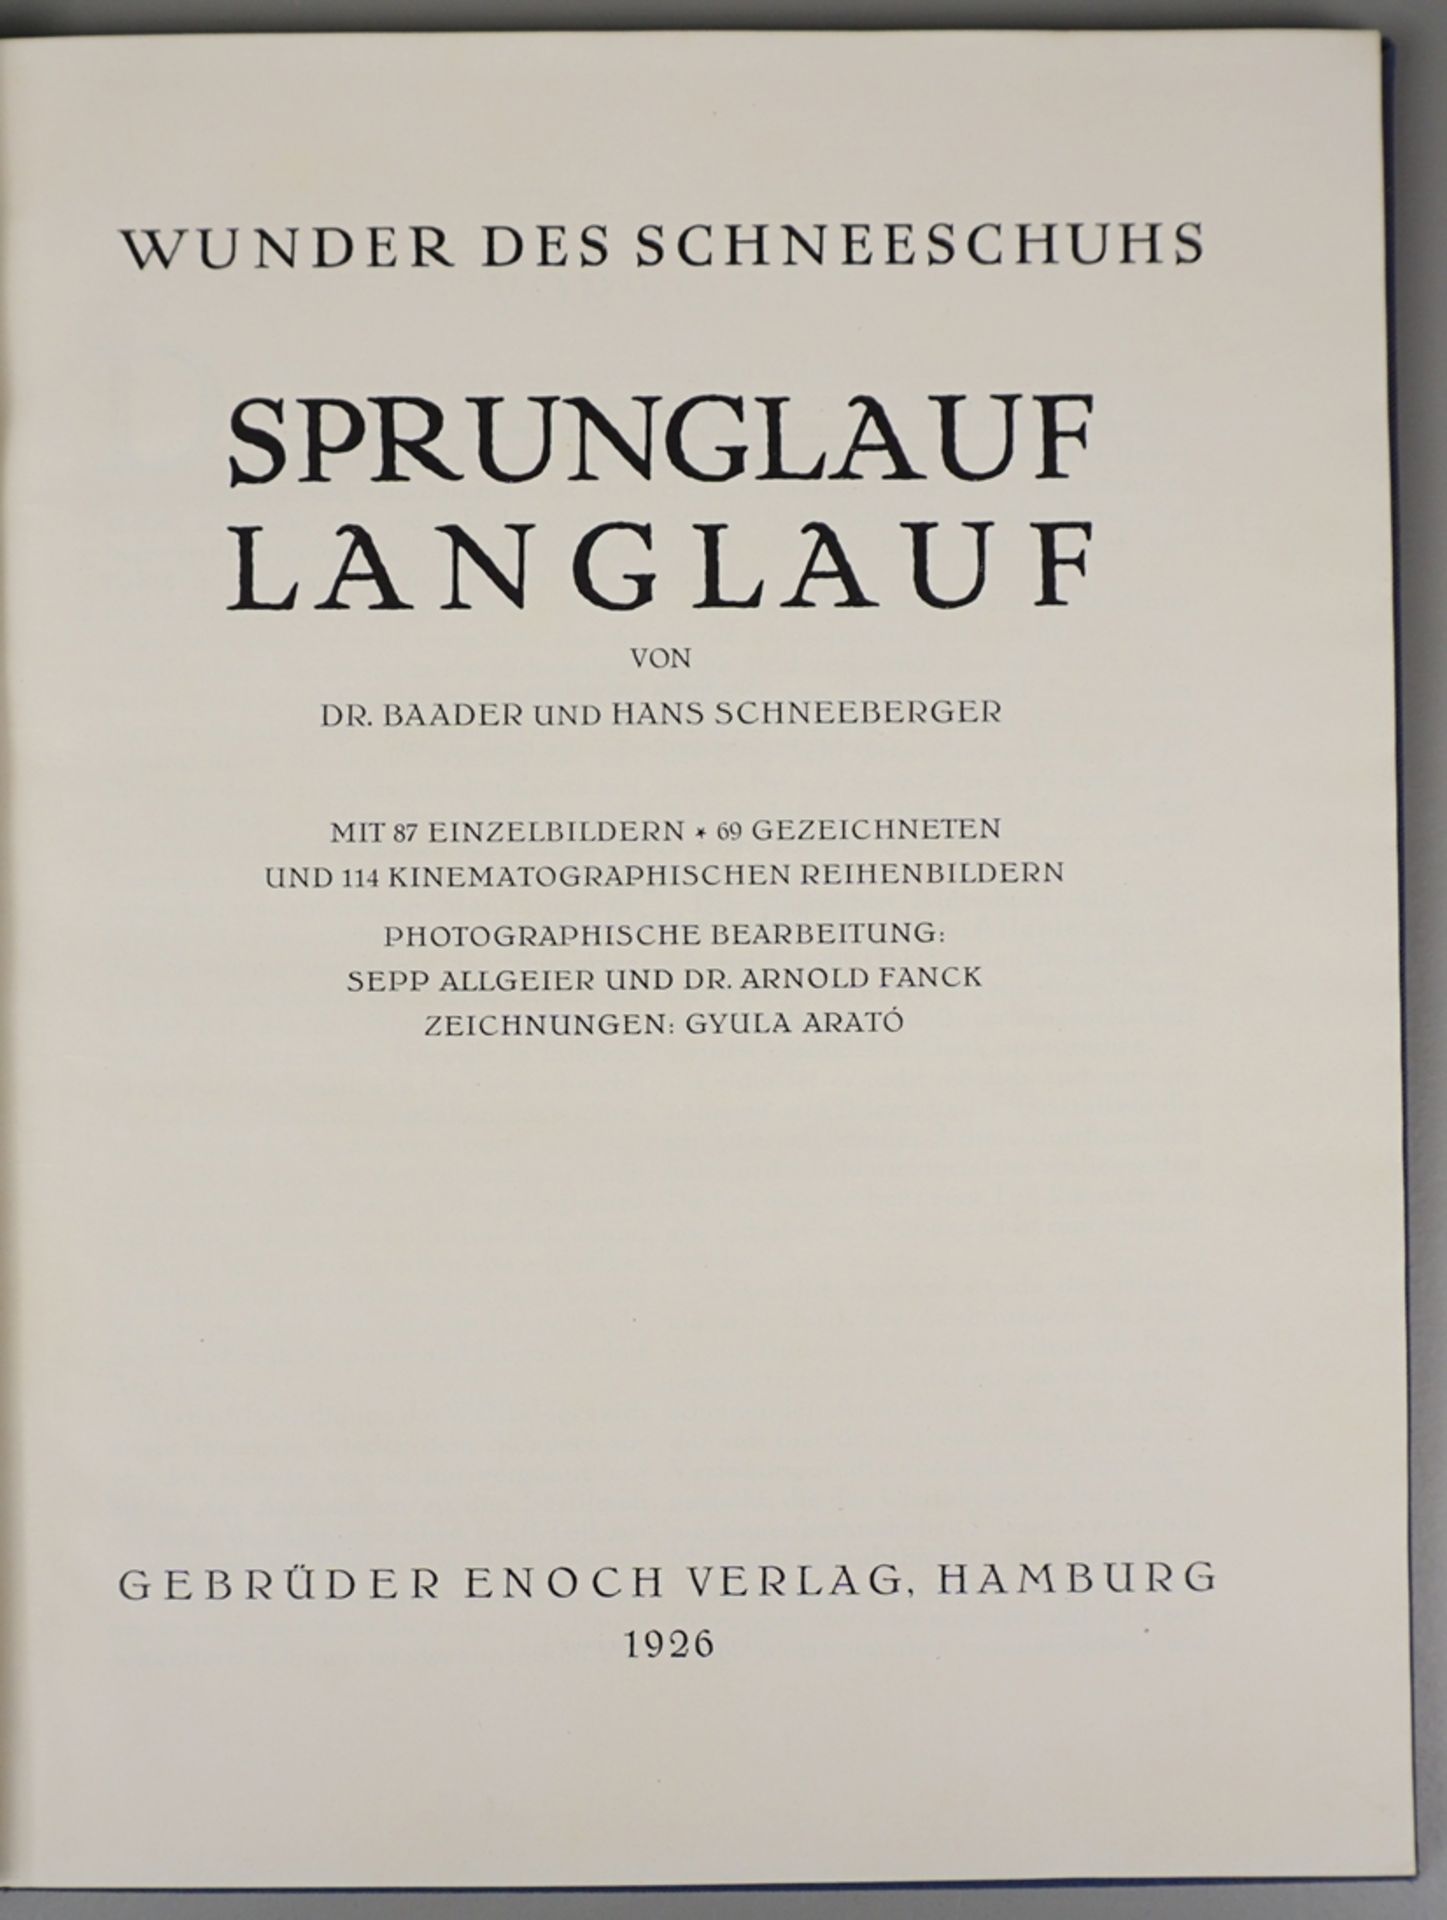 Wunder des Schneeschuhs - Sprunglauf - Langlauf,  D.Baader und Hans Schneeberger, 1926 - Bild 2 aus 3